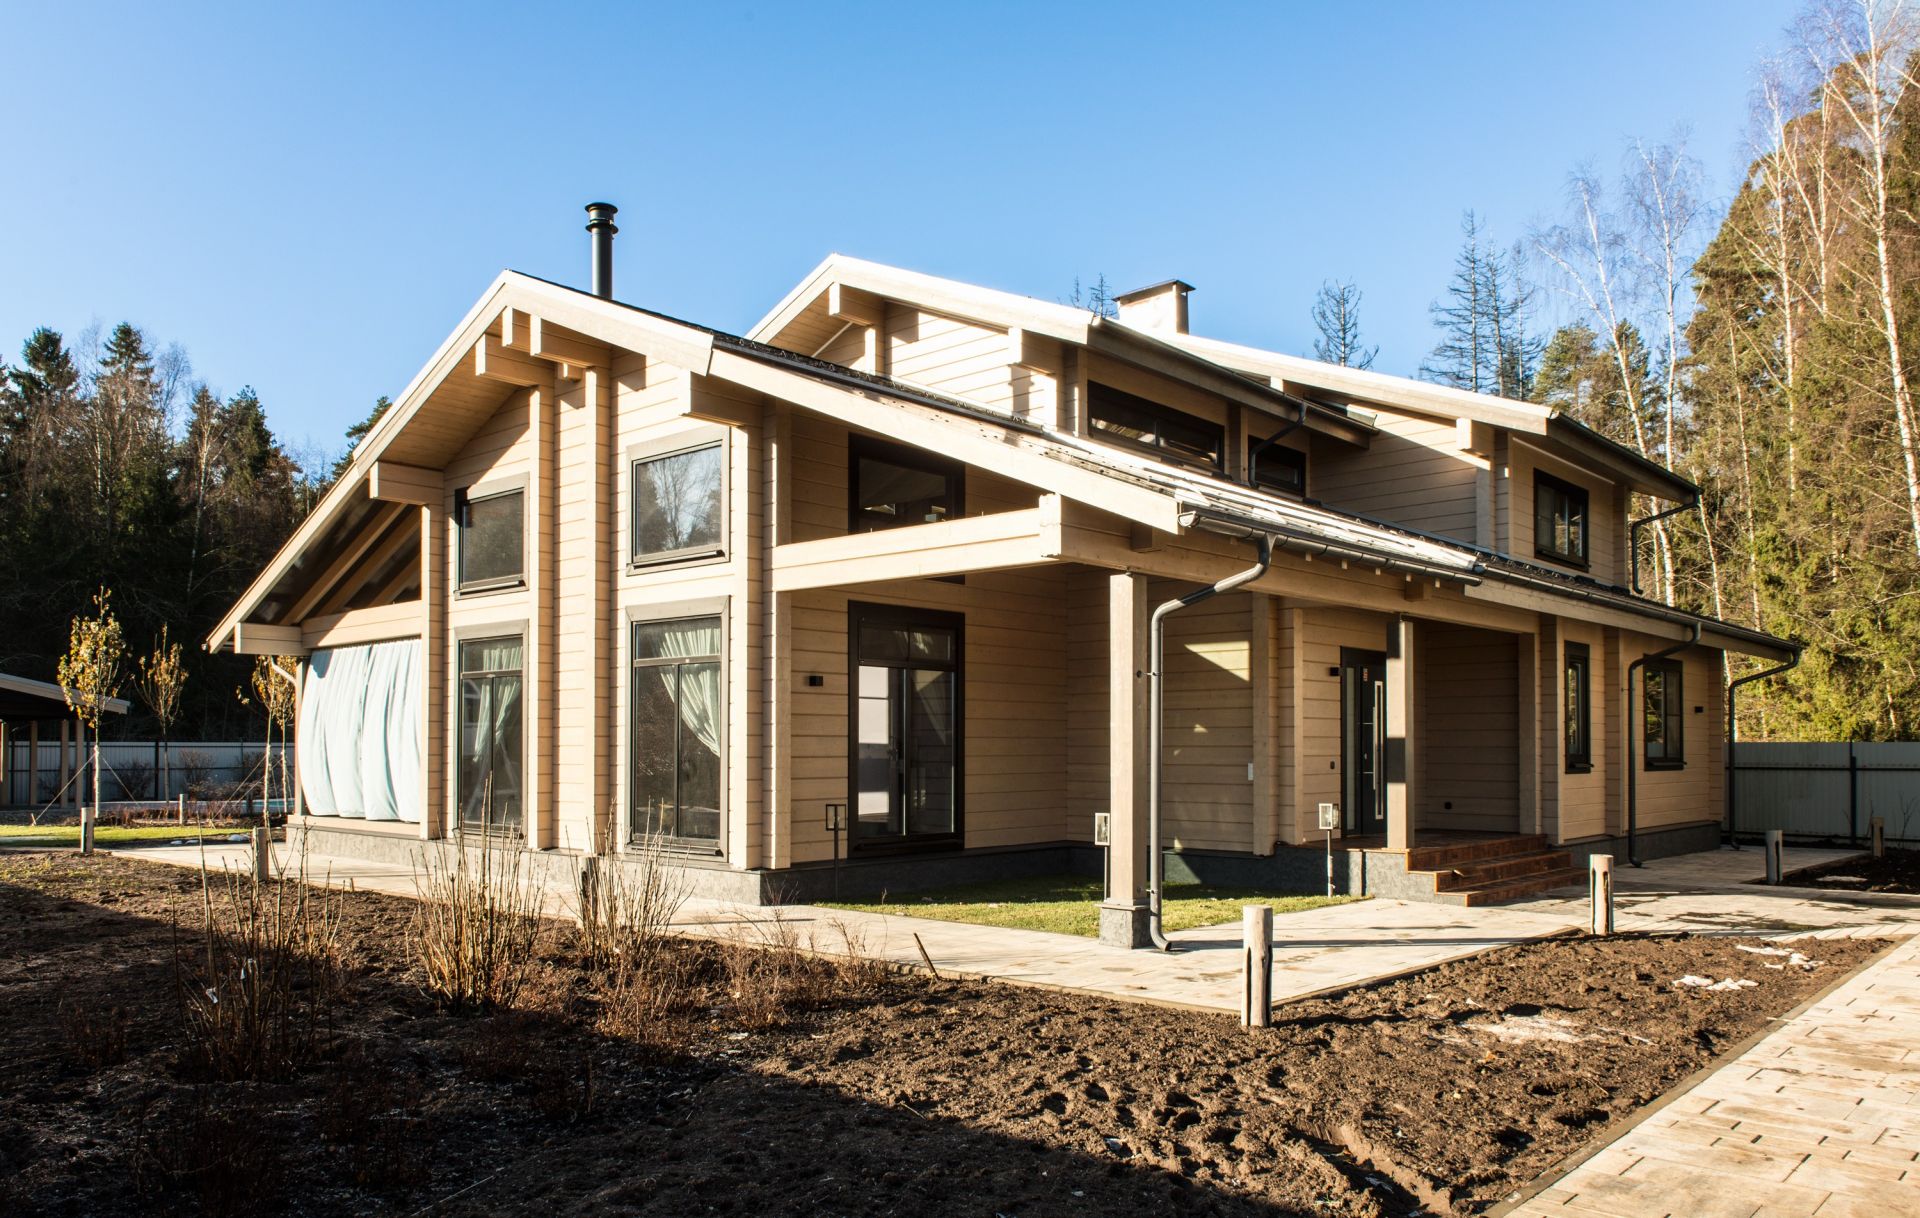 Casa in legno modello struttura in travi di legno for Casa prefabbricata in legno su terreno agricolo